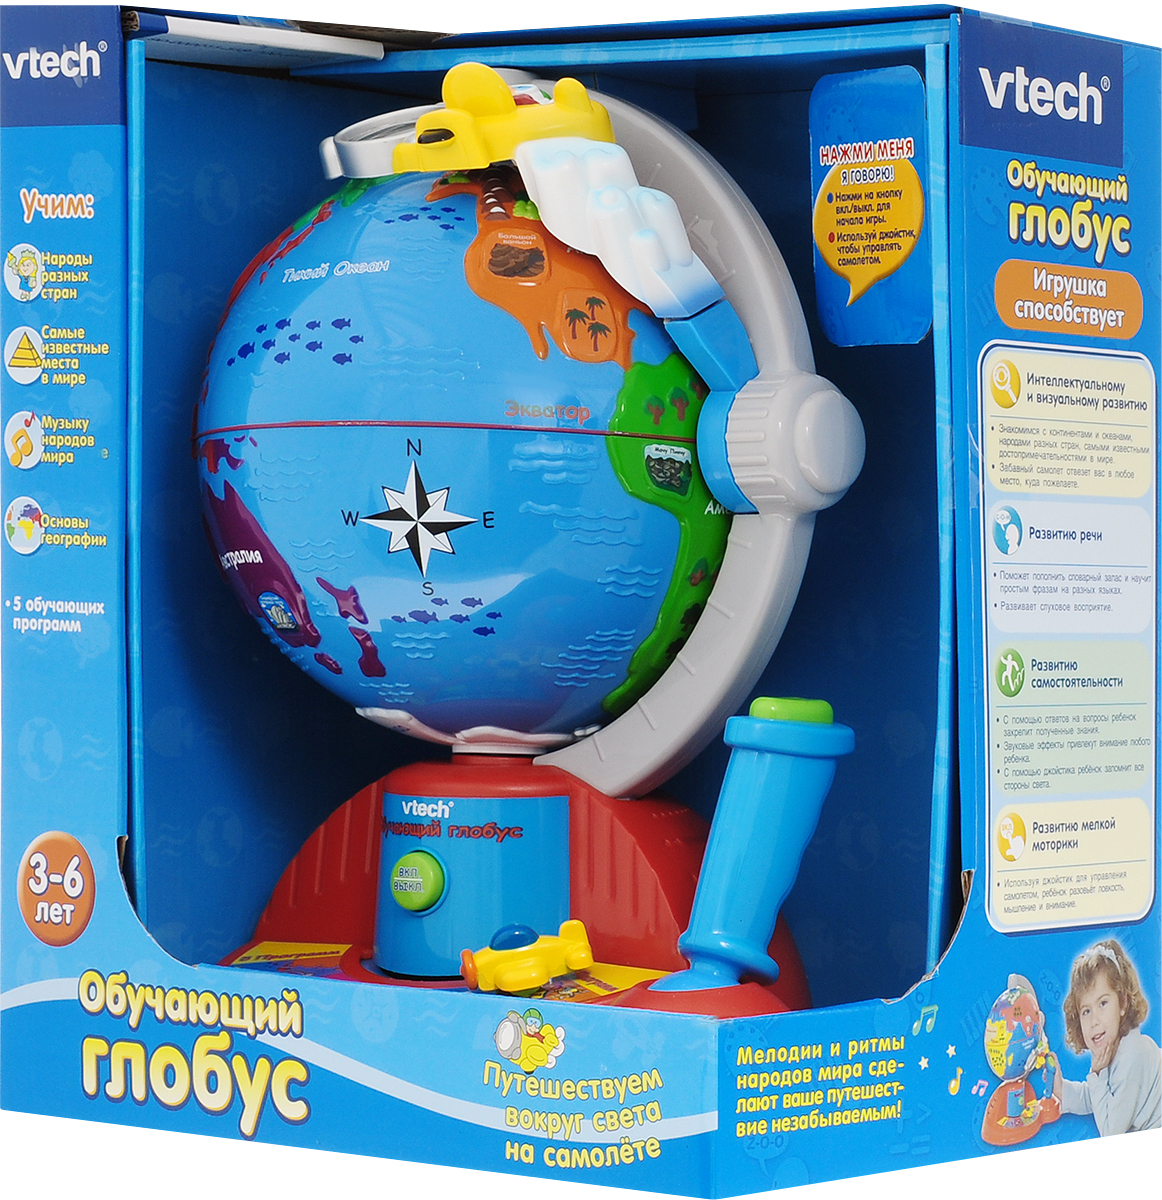 фото Vtech Развивающая игрушка Обучающий глобус